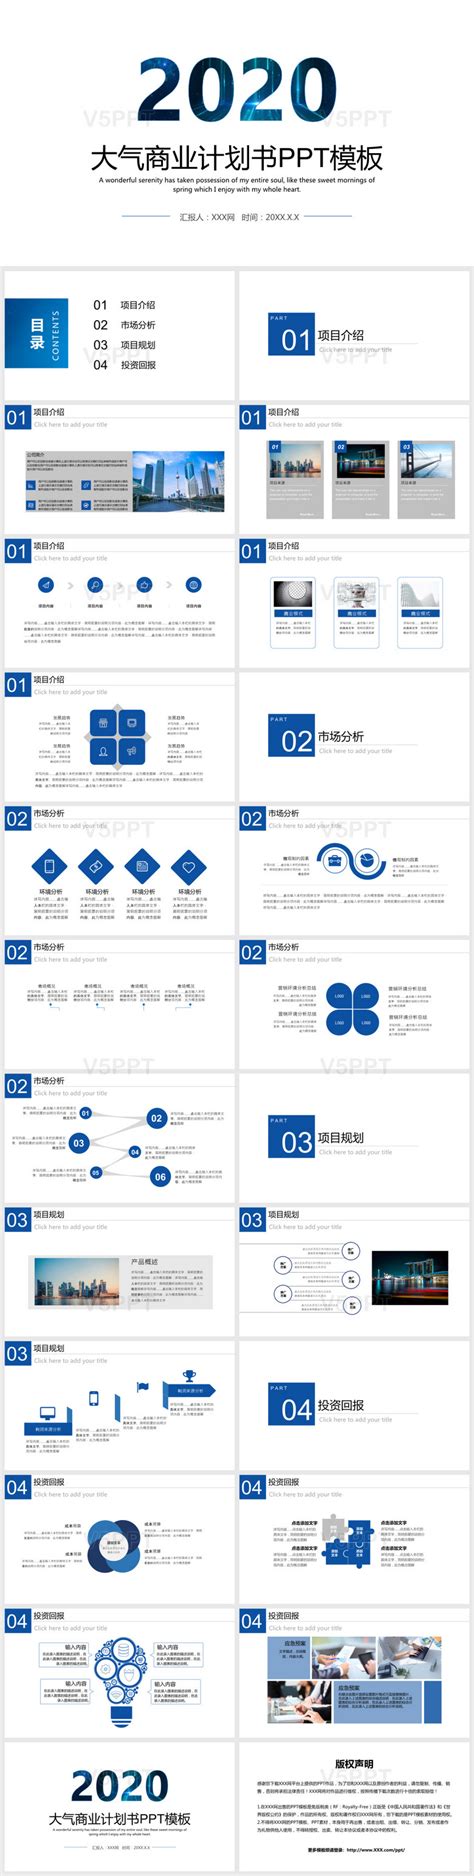 2020大气蓝色商务商业计划书PPT模板-V5PPT